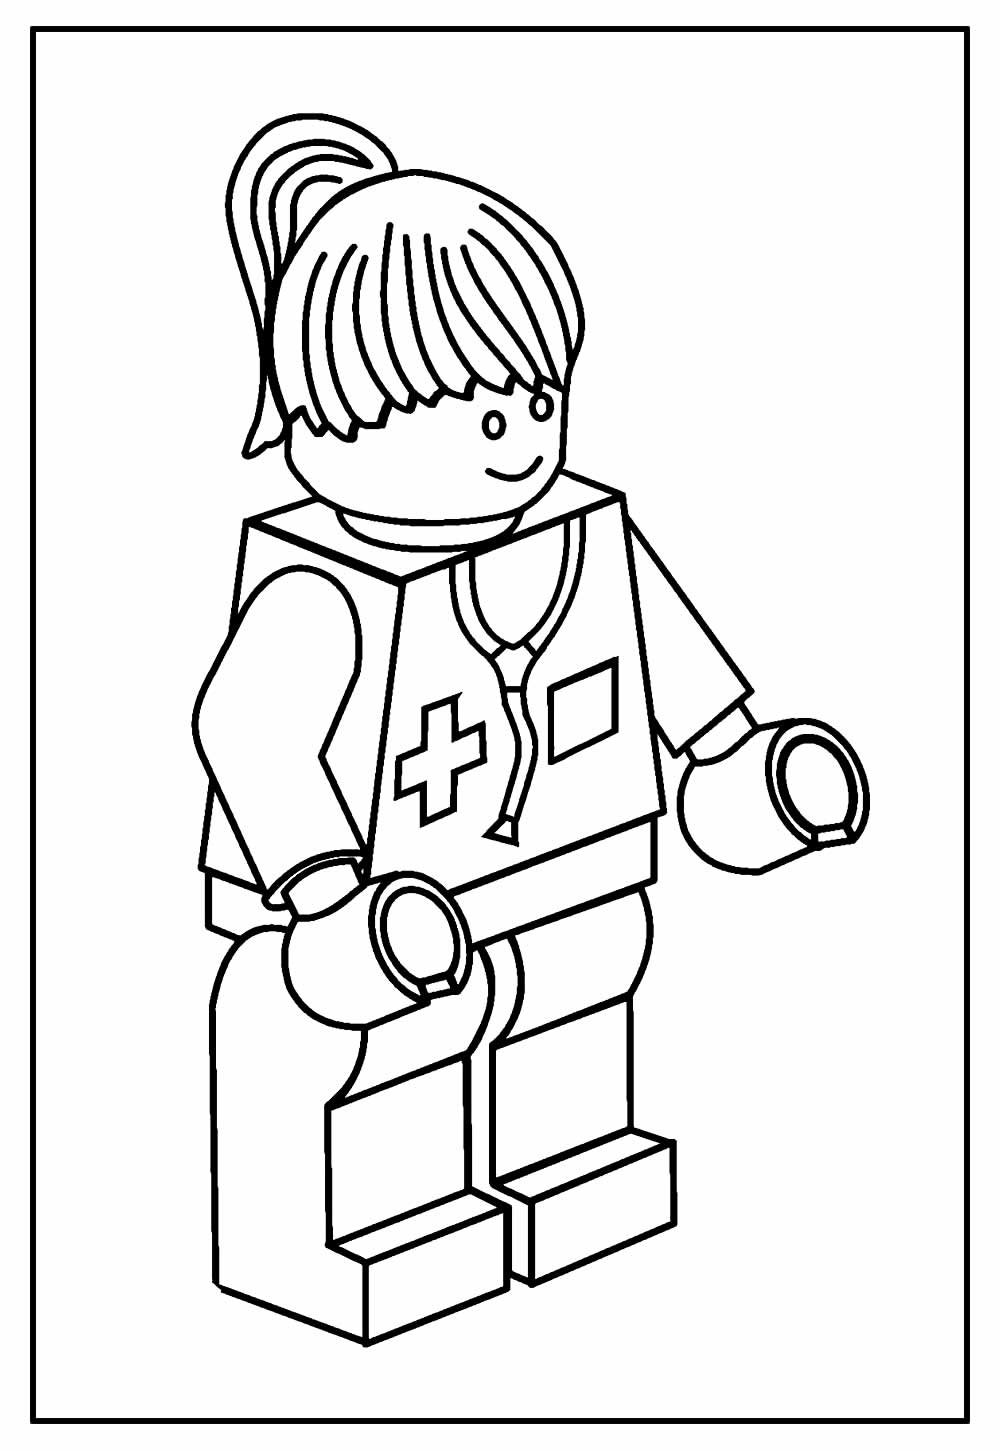 Desenho de Lego para imprimir